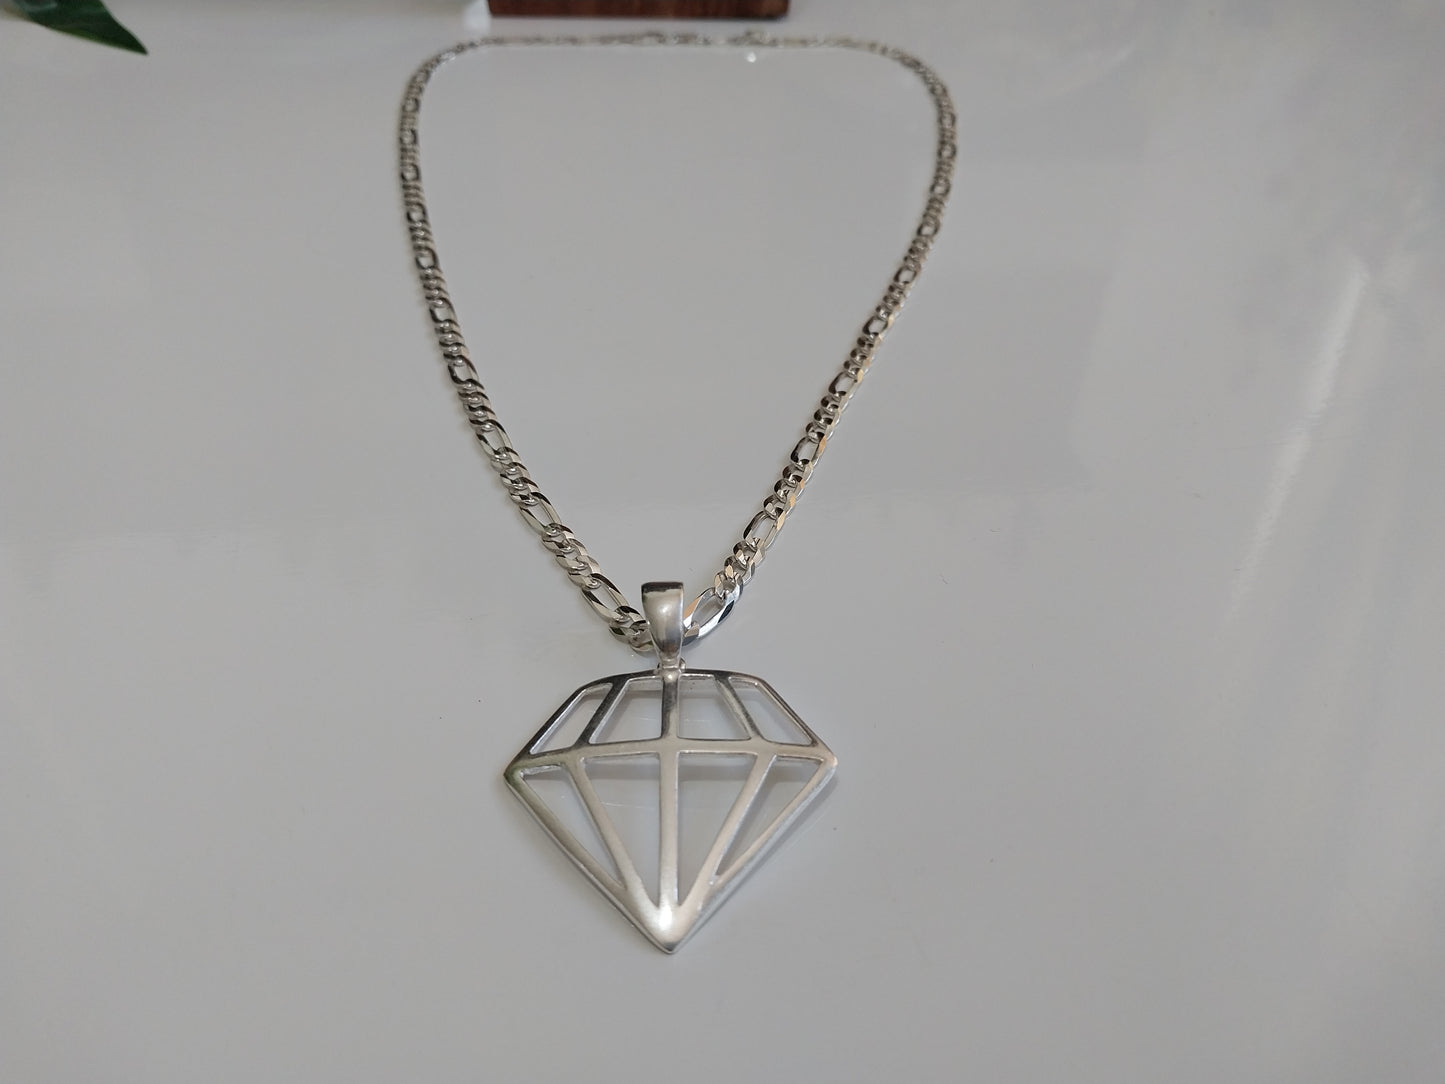 Corrente de Prata 925 - Elo 3x1 com Pingente de Prata Formato Diamante.